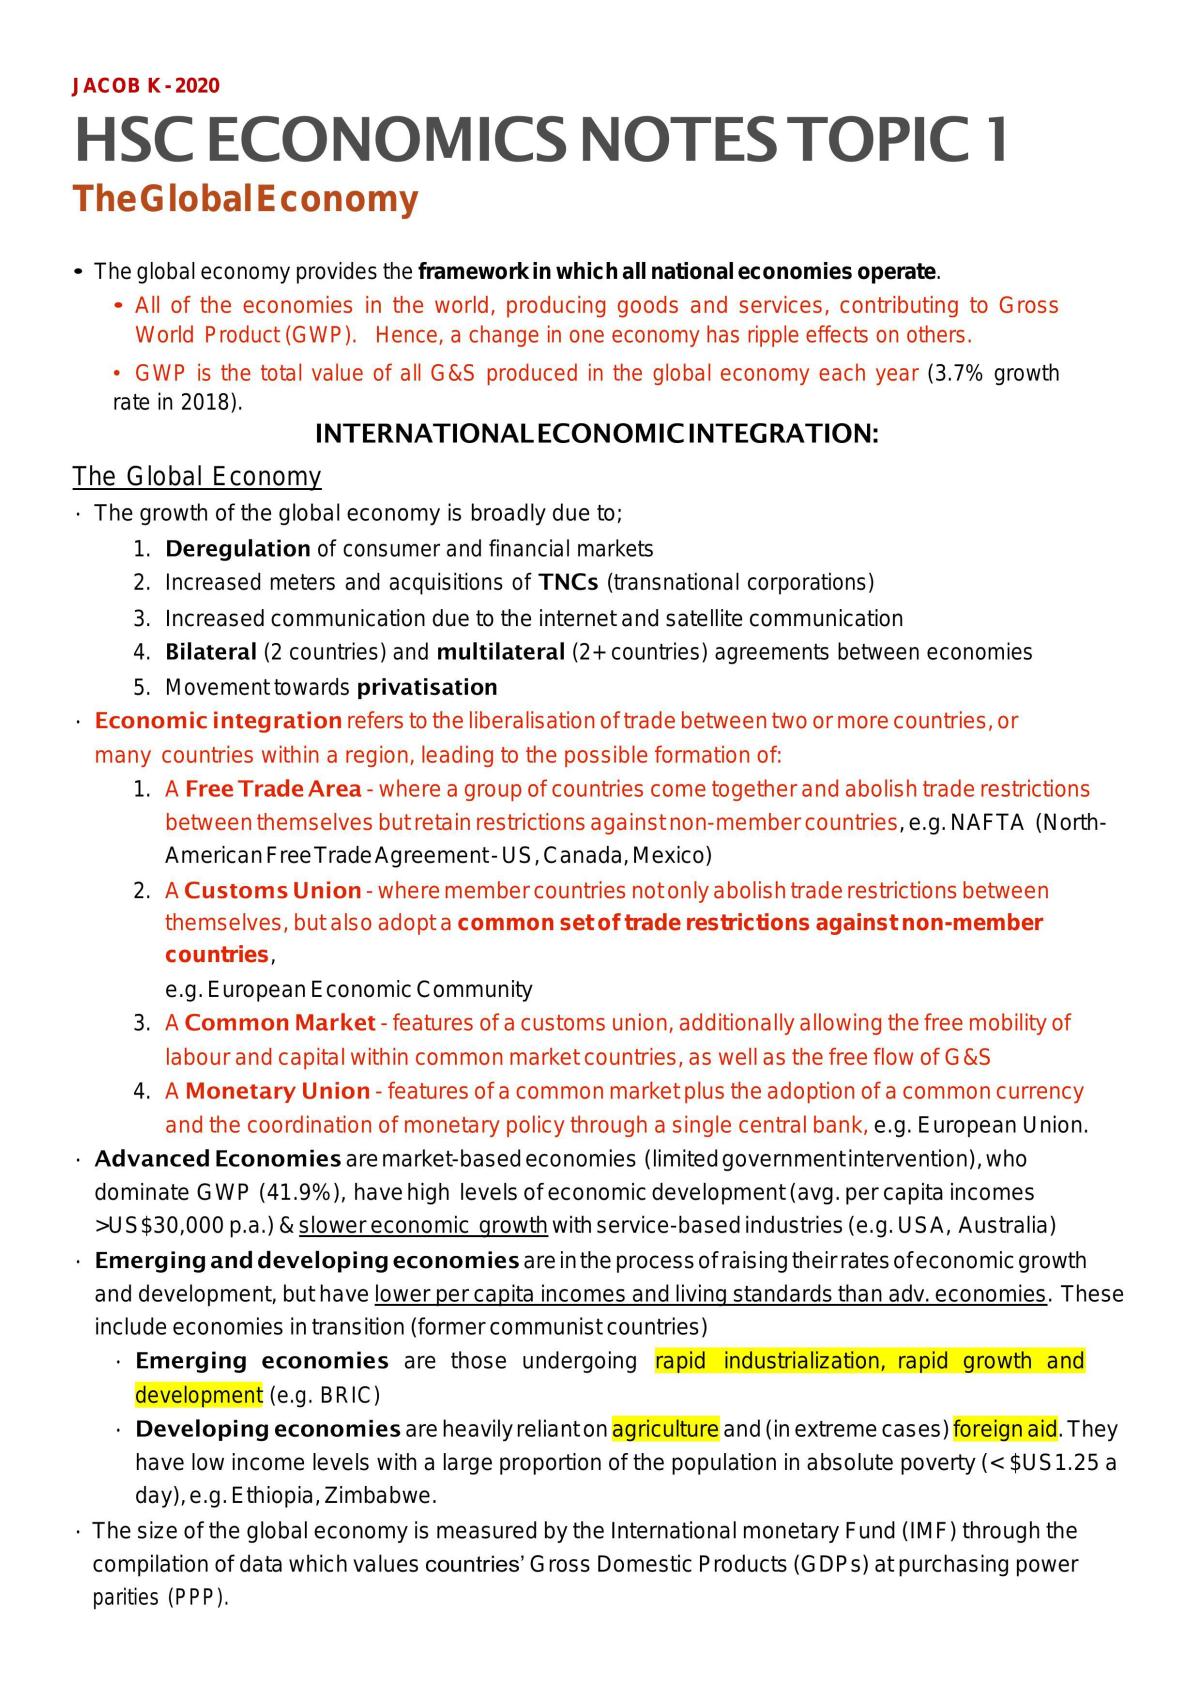 economics hsc essay questions